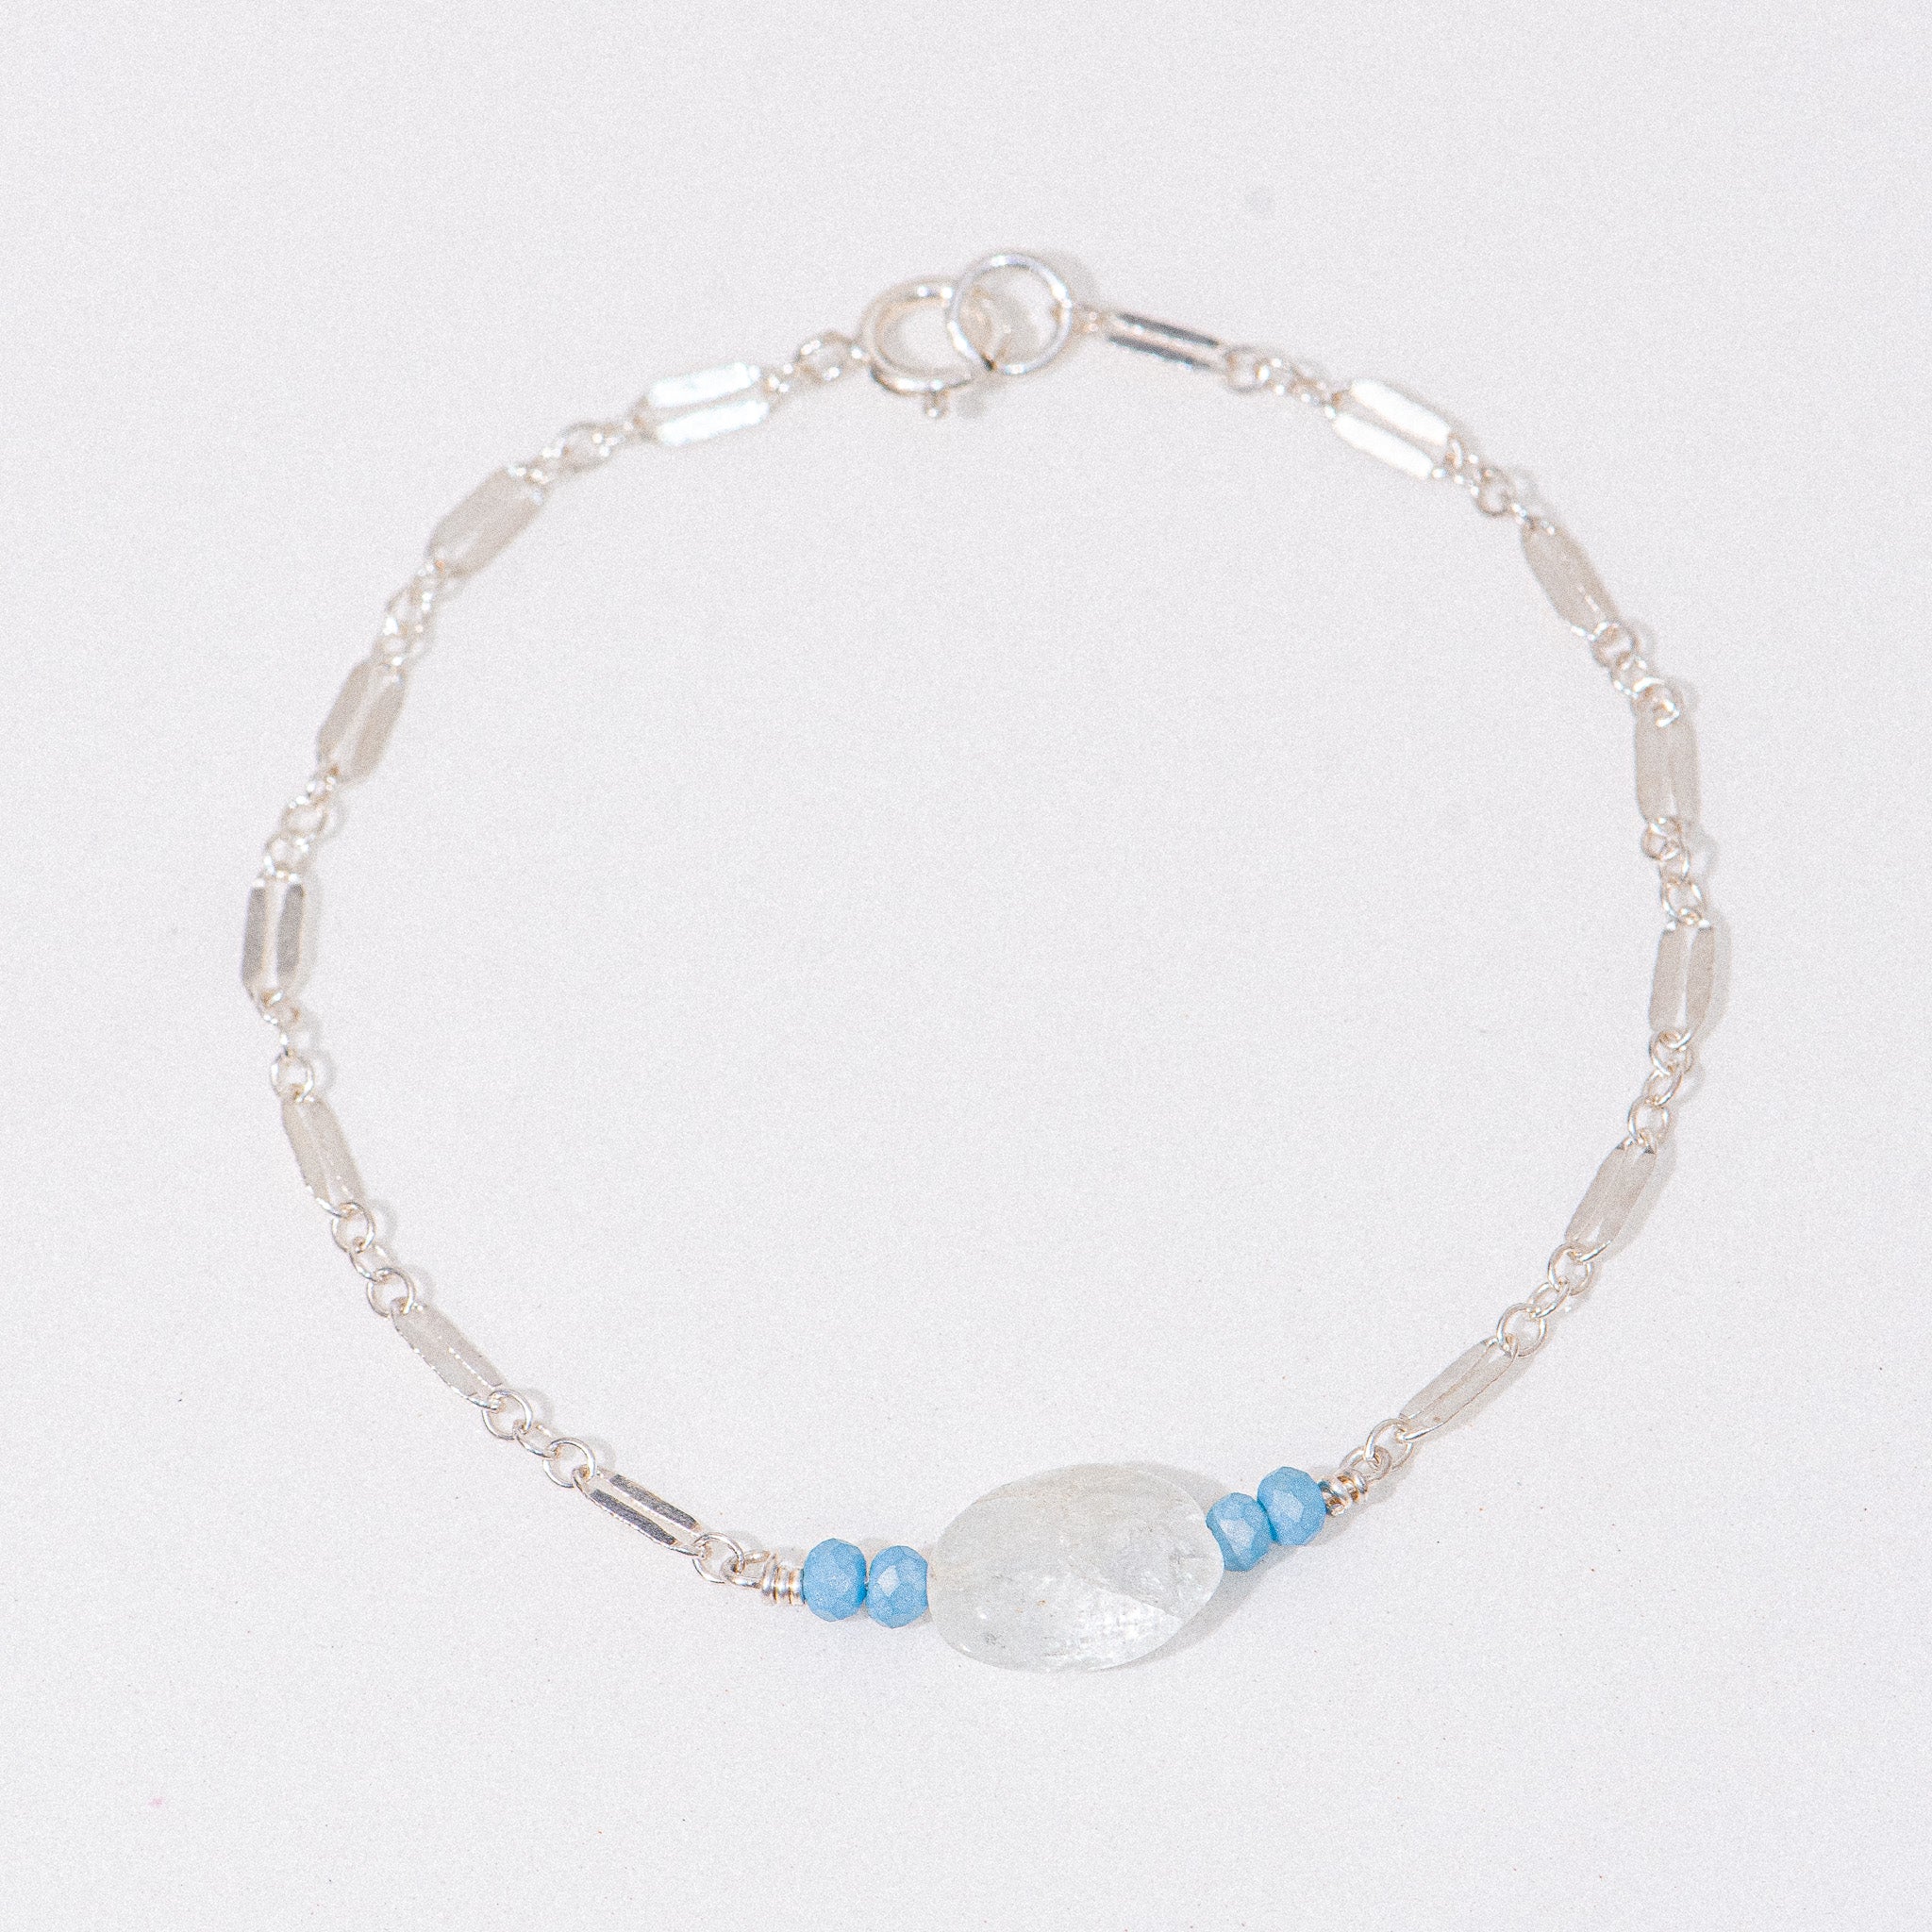 Silver Quartz and Blue Bead Bar Bracelet